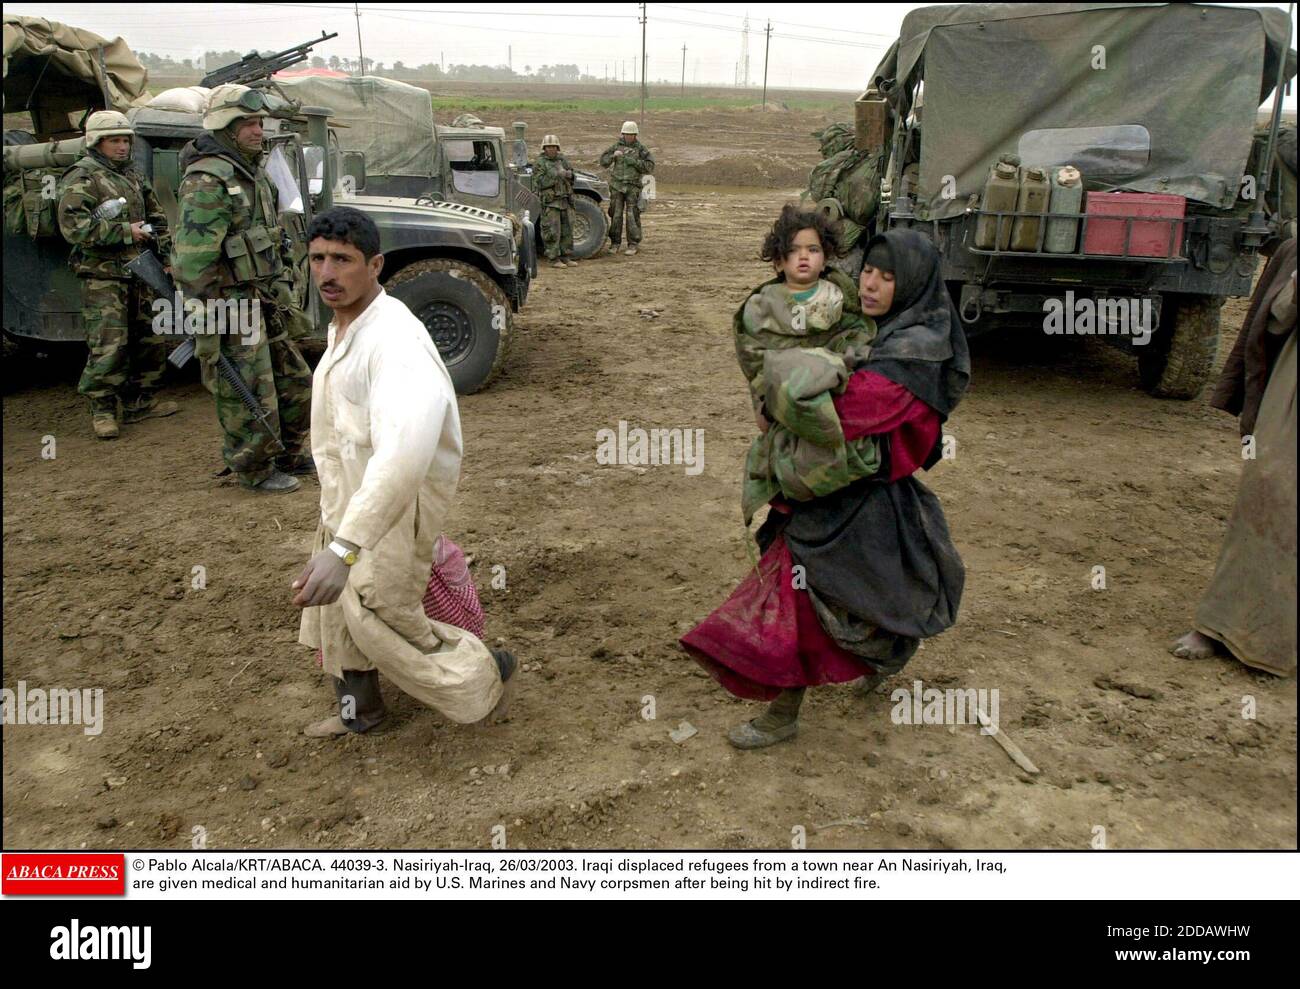 KEIN FILM, KEIN VIDEO, KEIN FERNSEHEN, KEIN DOKUMENTARFILM - © PABLO ALCALA/KRT/ABACA. 44039-3. Nasiriyah-Iraq, 26/03/2003. Irakische Flüchtlinge aus einer Stadt in der Nähe von an Nasiriyah im Irak erhalten medizinische und humanitäre Hilfe von US-Marineinfanteristen und Korpsmen der Marine, nachdem sie von einem indirekten Feuer getroffen wurden. Stockfoto